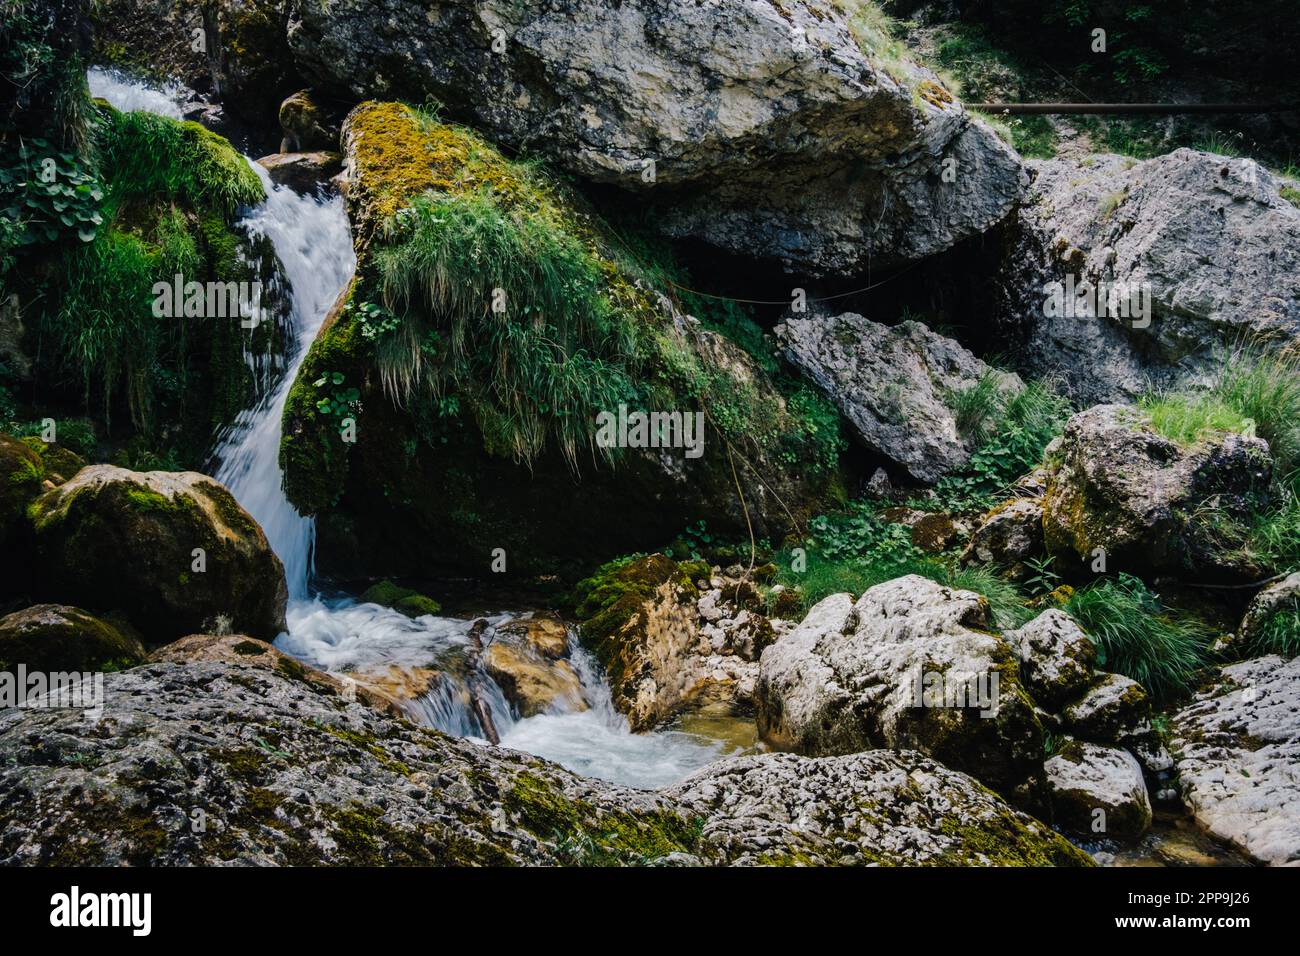 Cascades de la rivière Cholet dans les Alpes françaises, près de Pont en Royans dans la chaîne des Vercors Banque D'Images